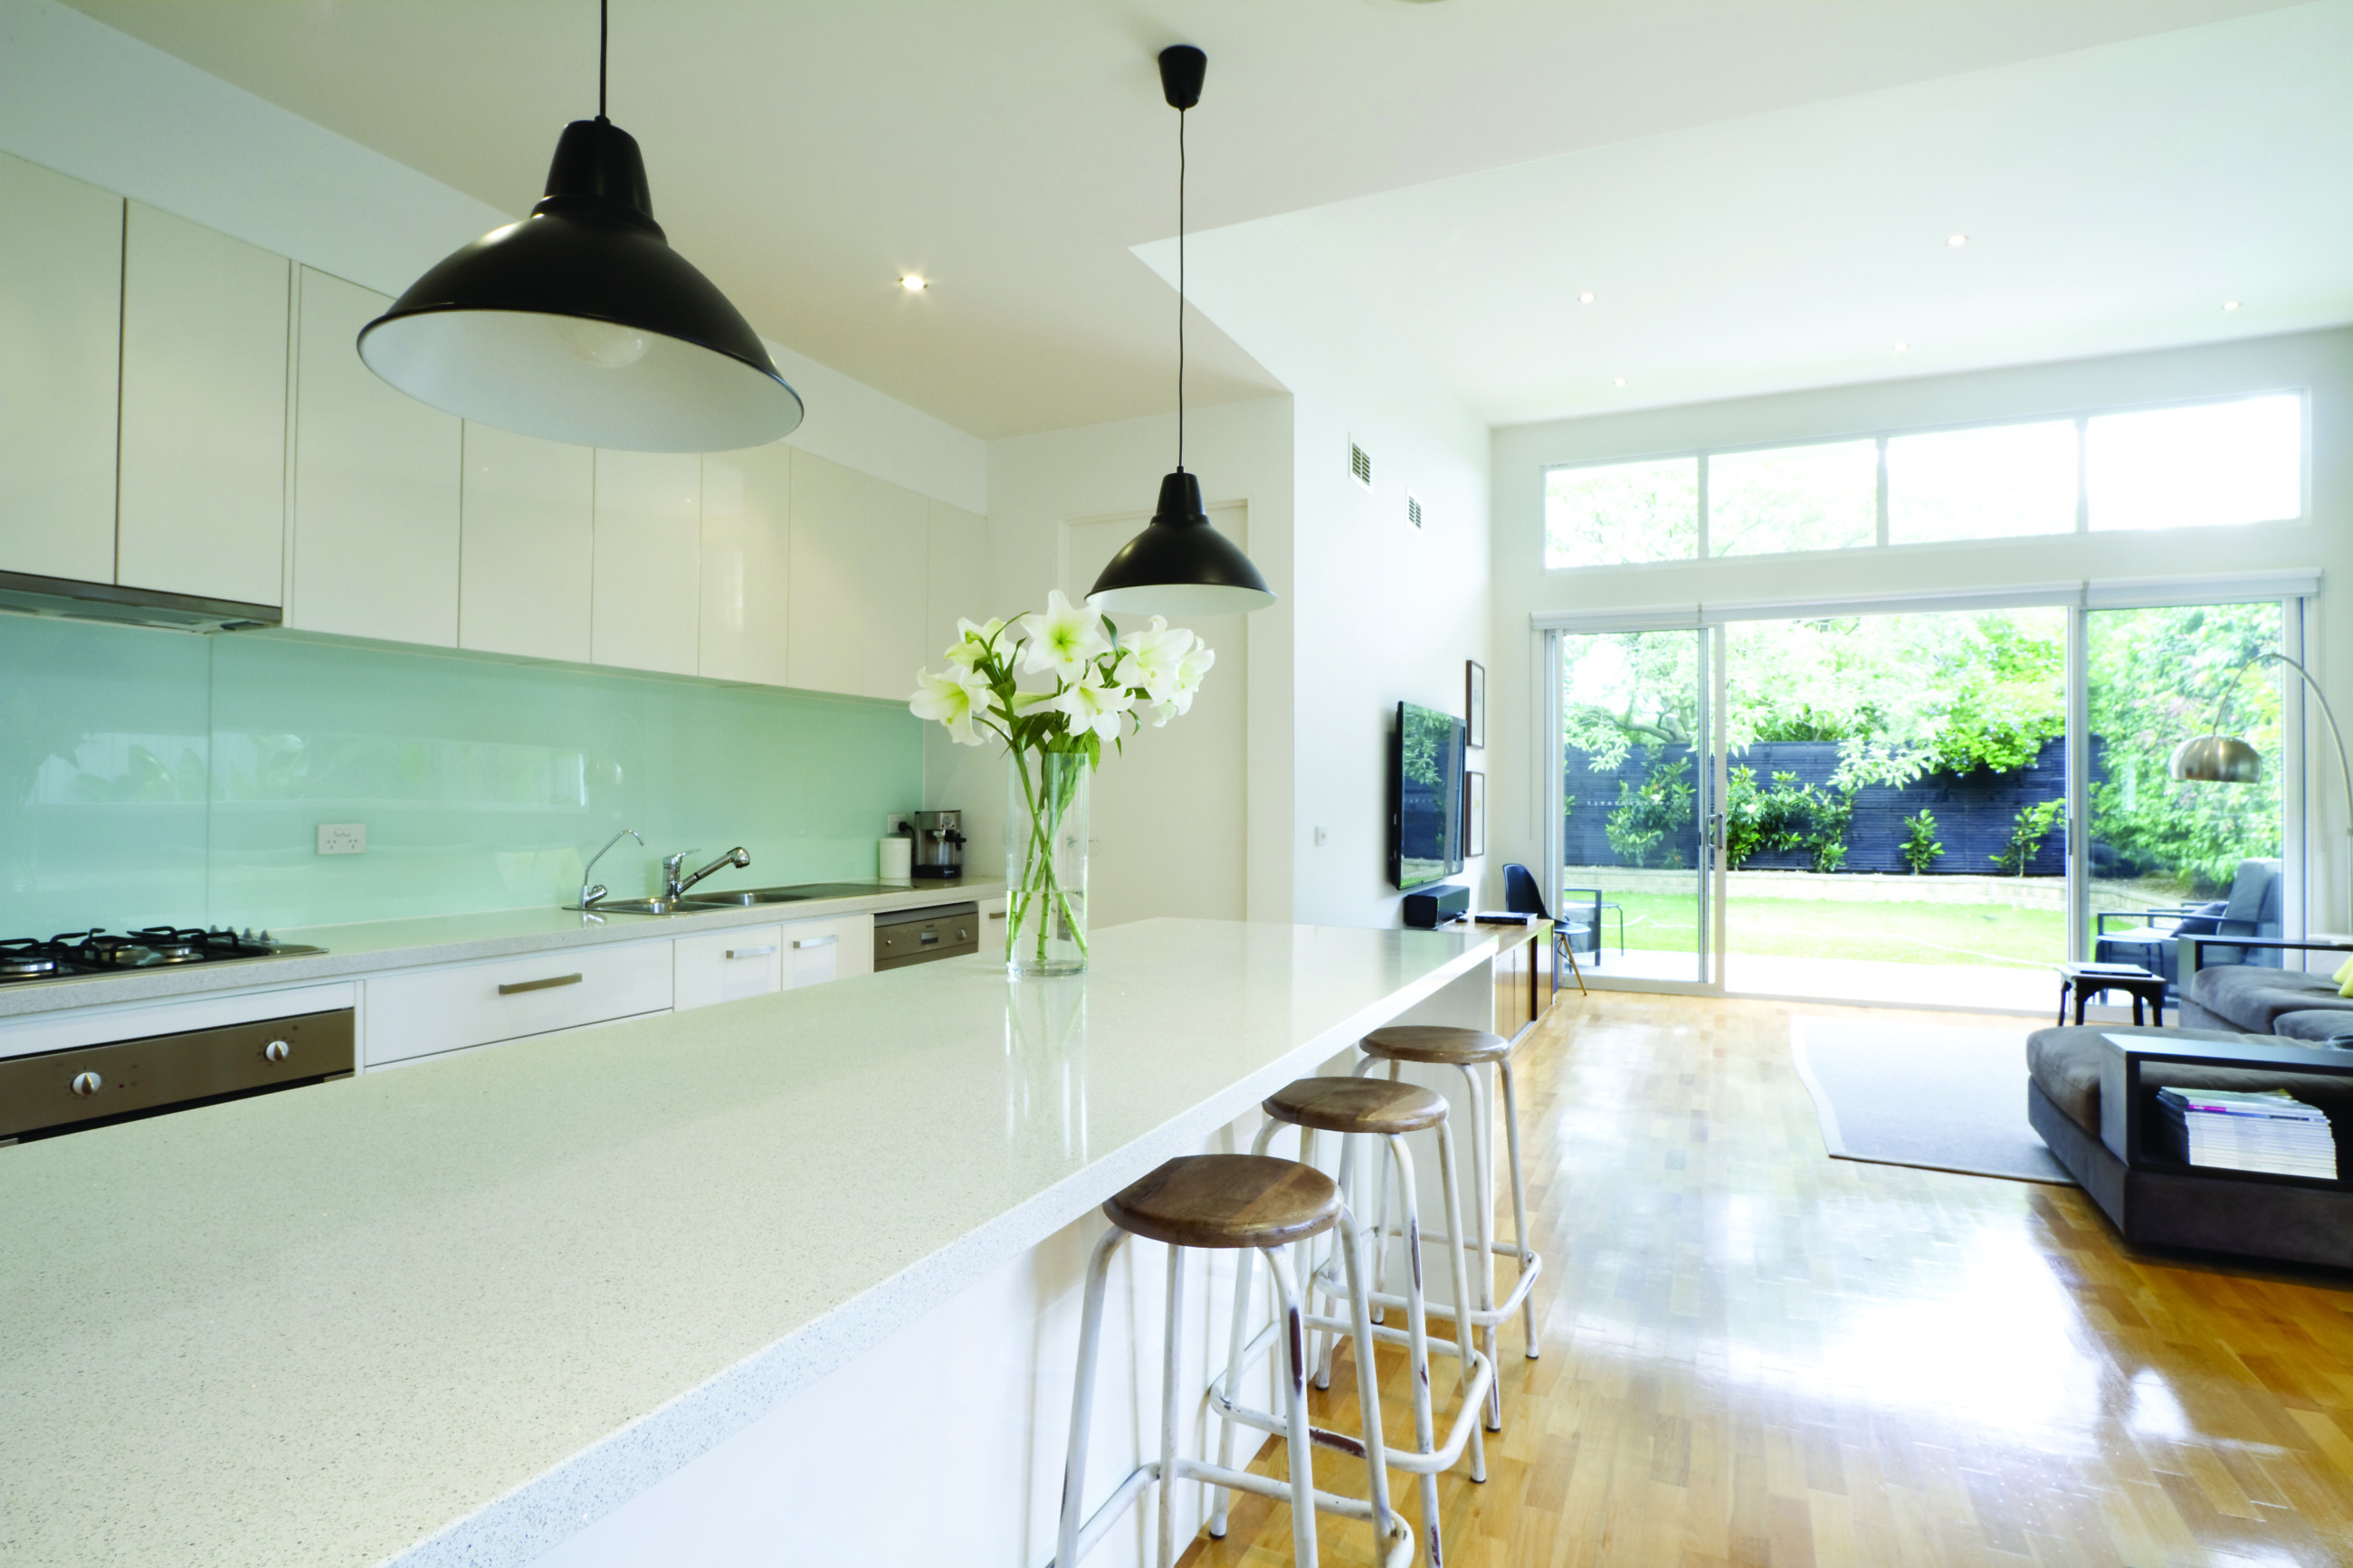 White kitchen with light green splash back, in living room